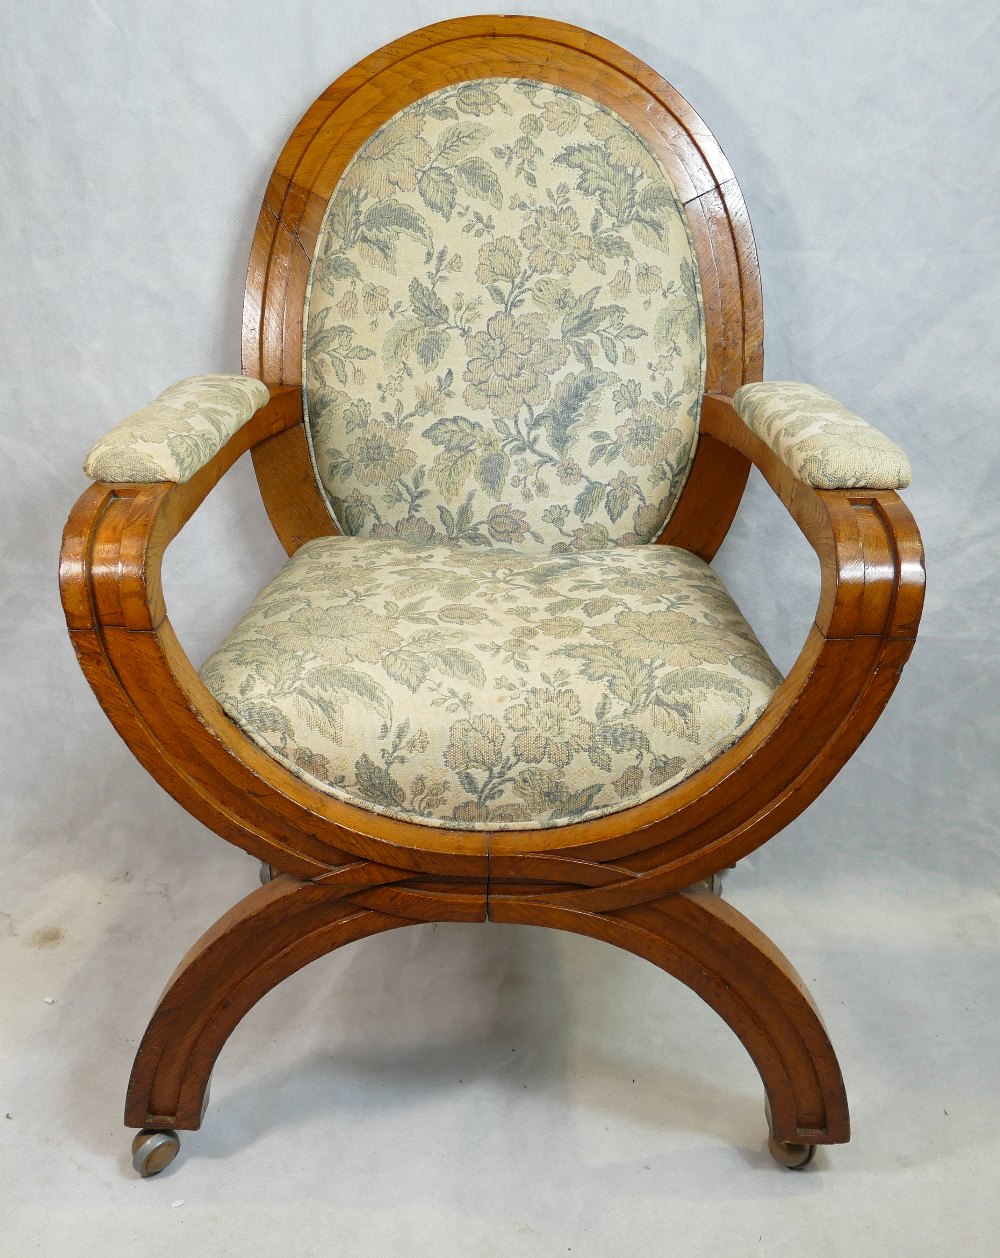 Alderman's X frame upholstered oak armchair from Burslem (Stoke on Trent) Council. - Image 6 of 6